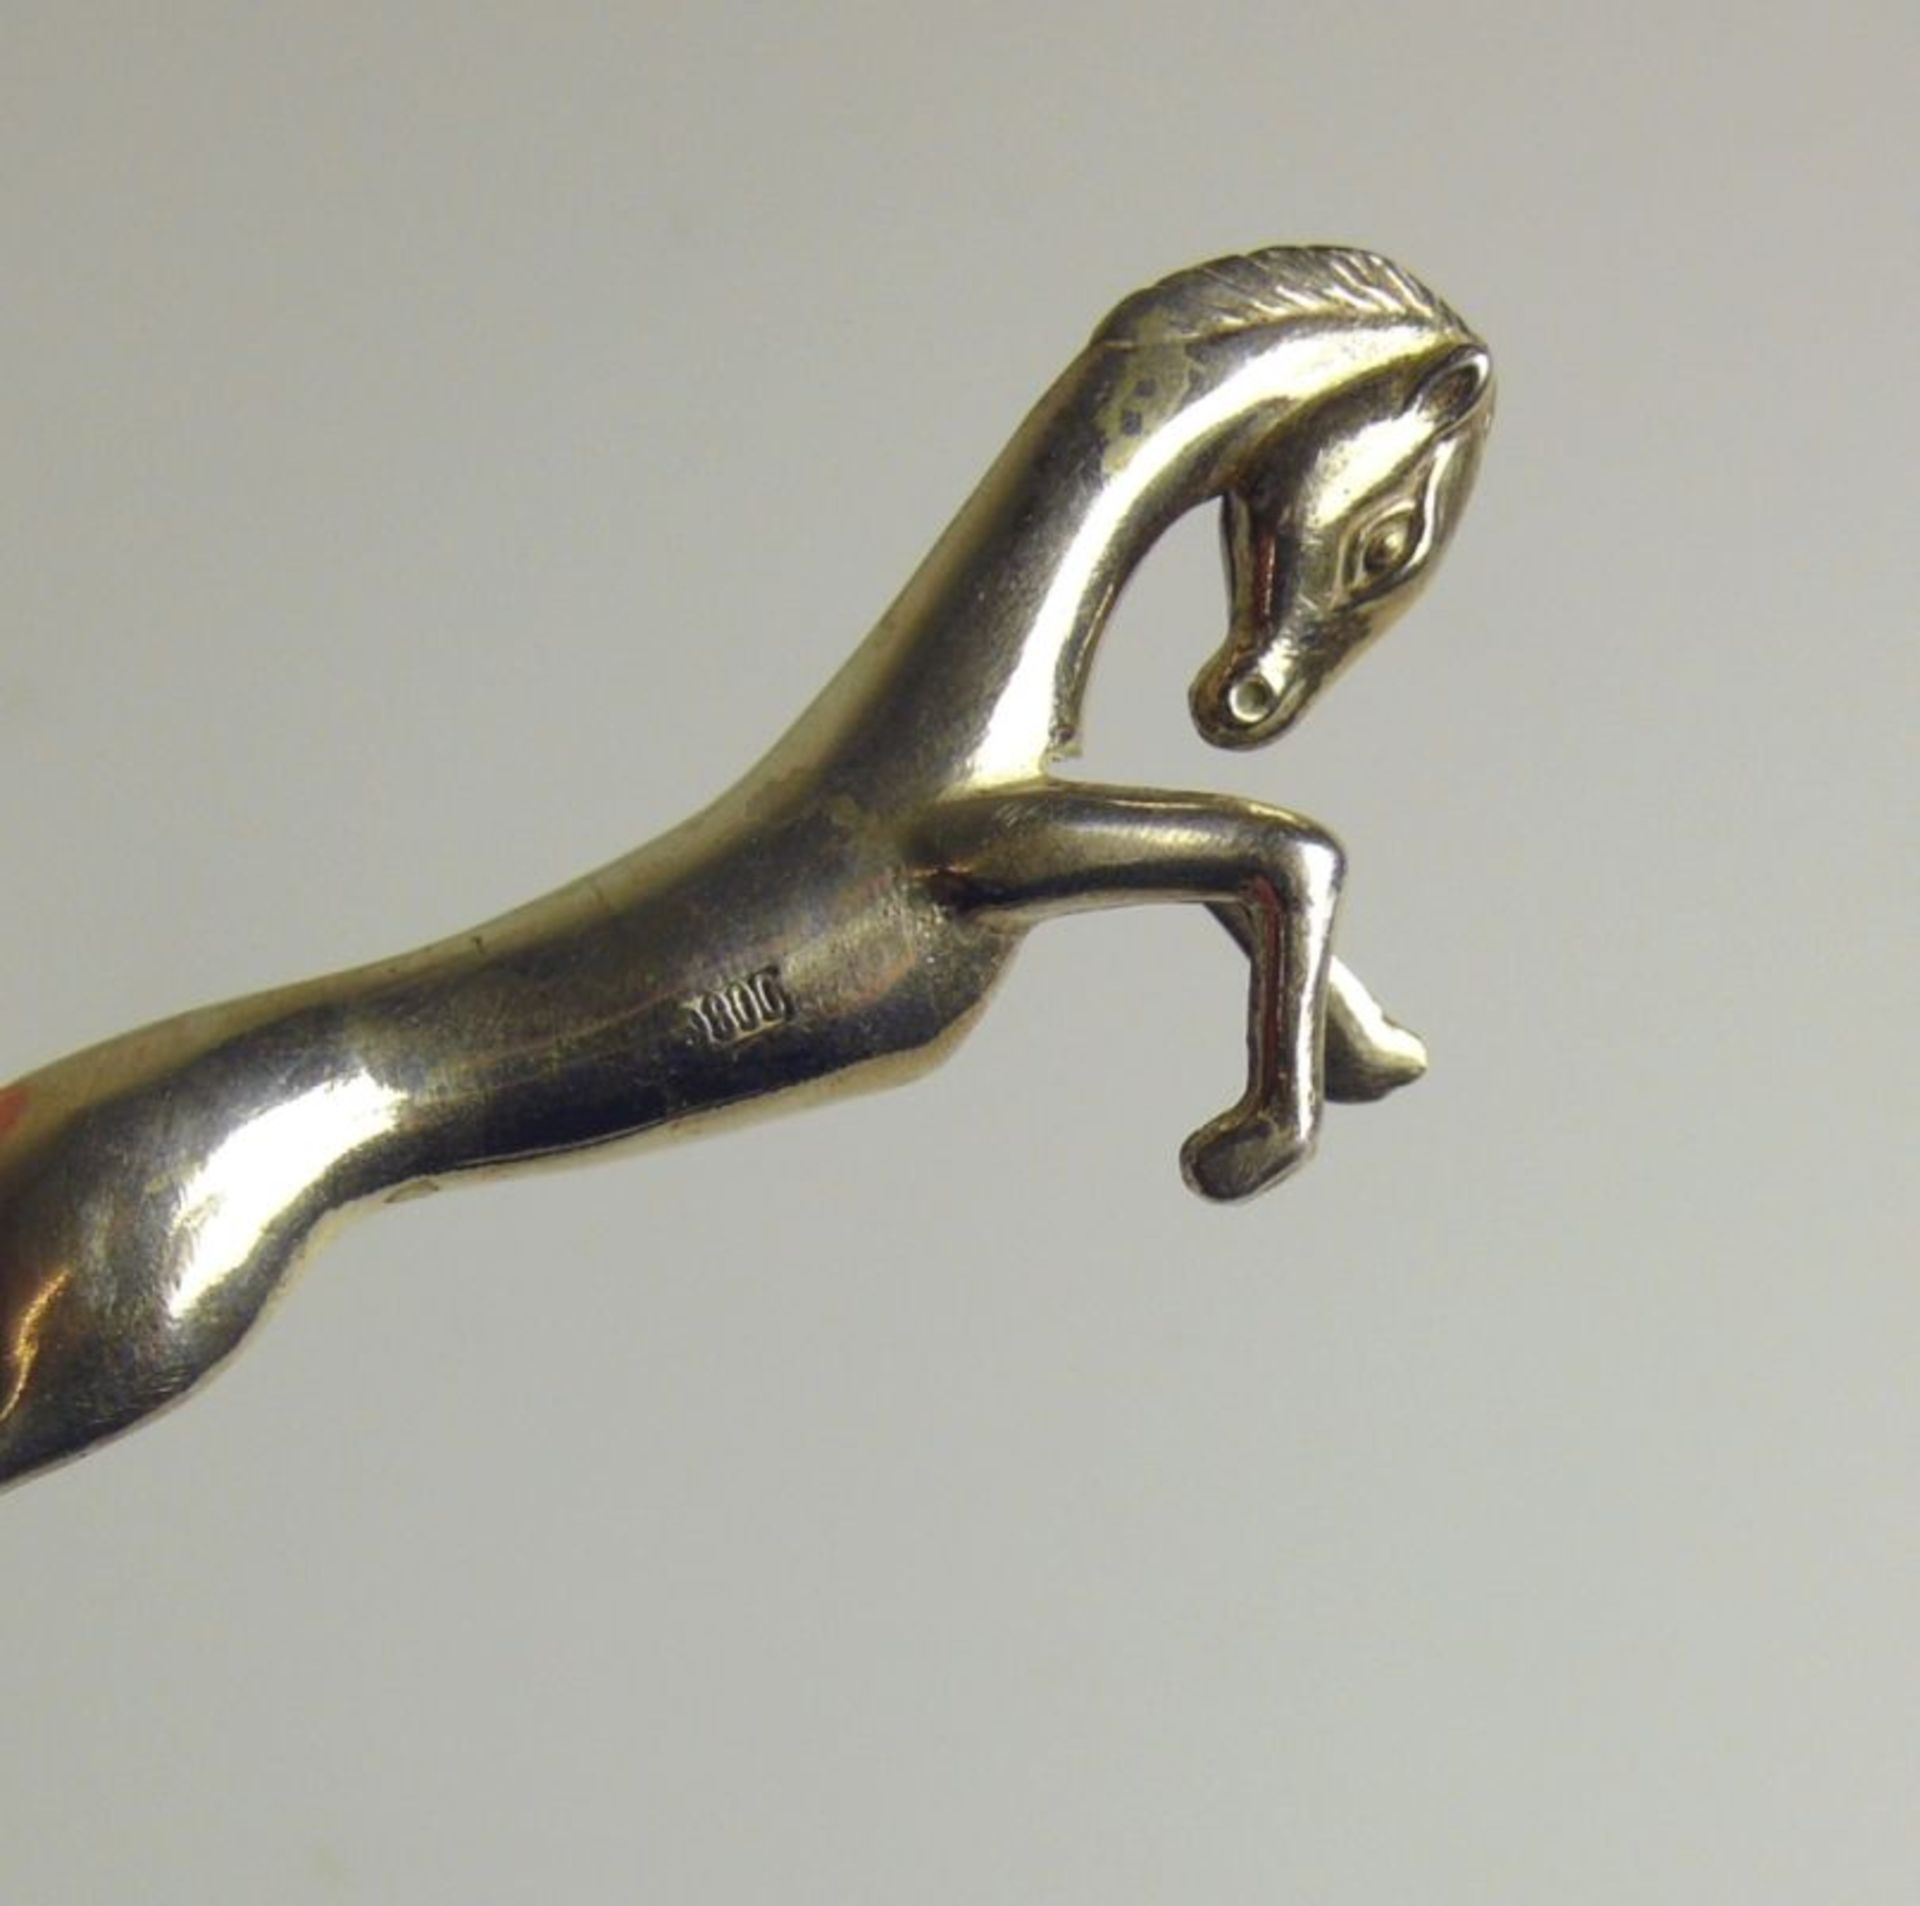 6 Messerbänkchenjeweils Silber 800; Pferdedekor; L: 8 cm; zus. 229g - Bild 3 aus 3